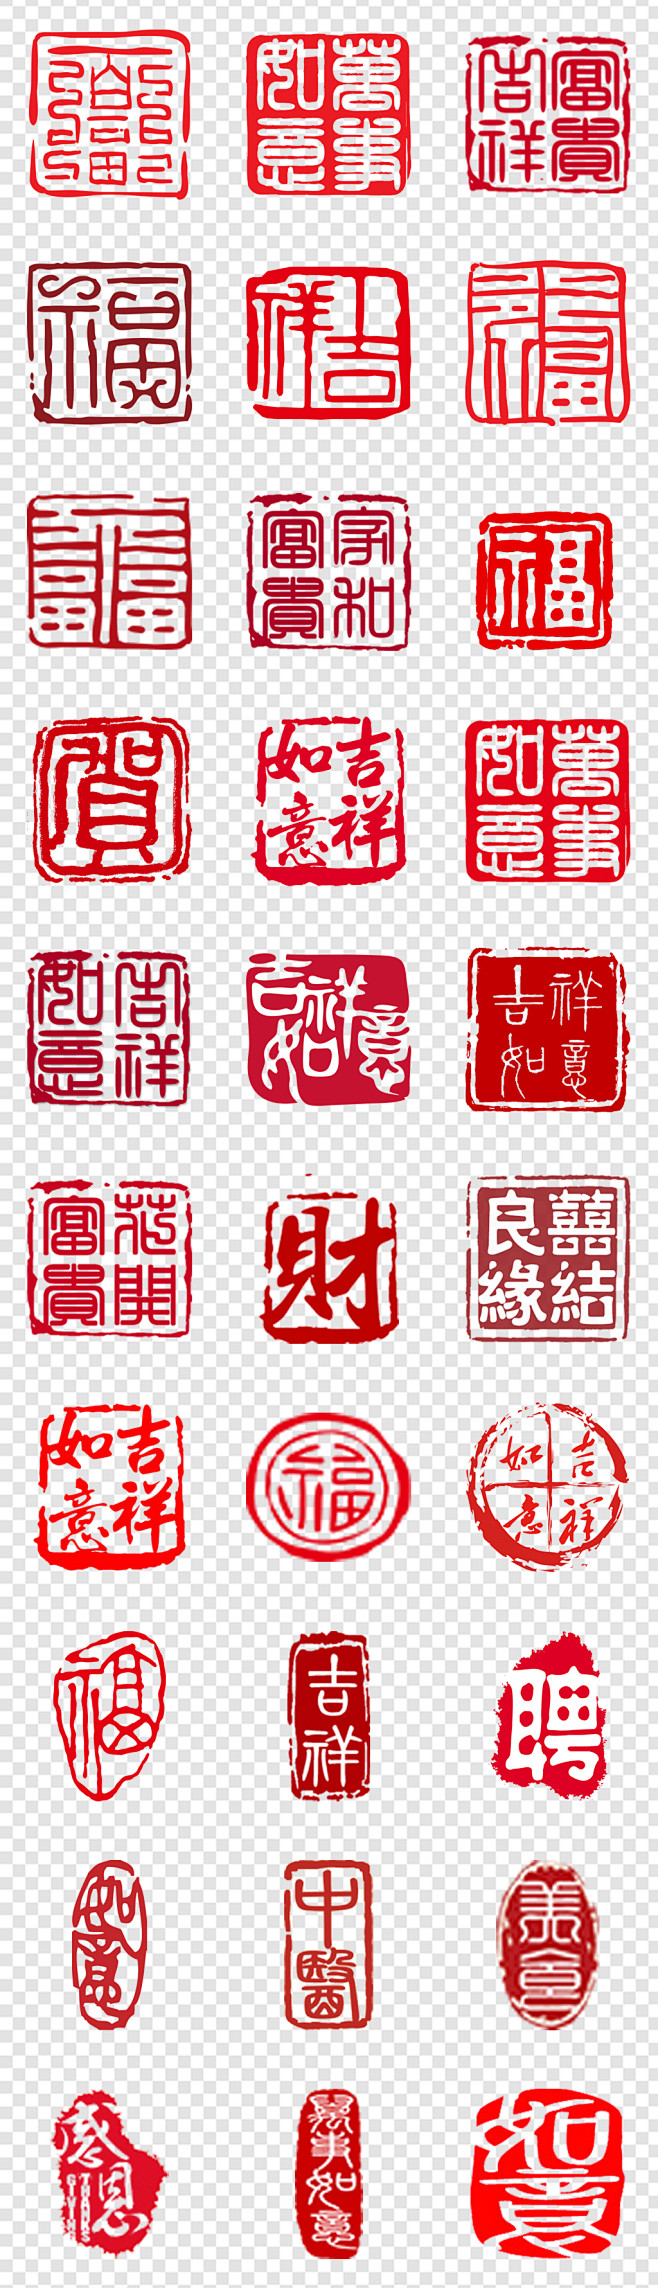 中国传统篆刻新年祝福印章PSD模板素材